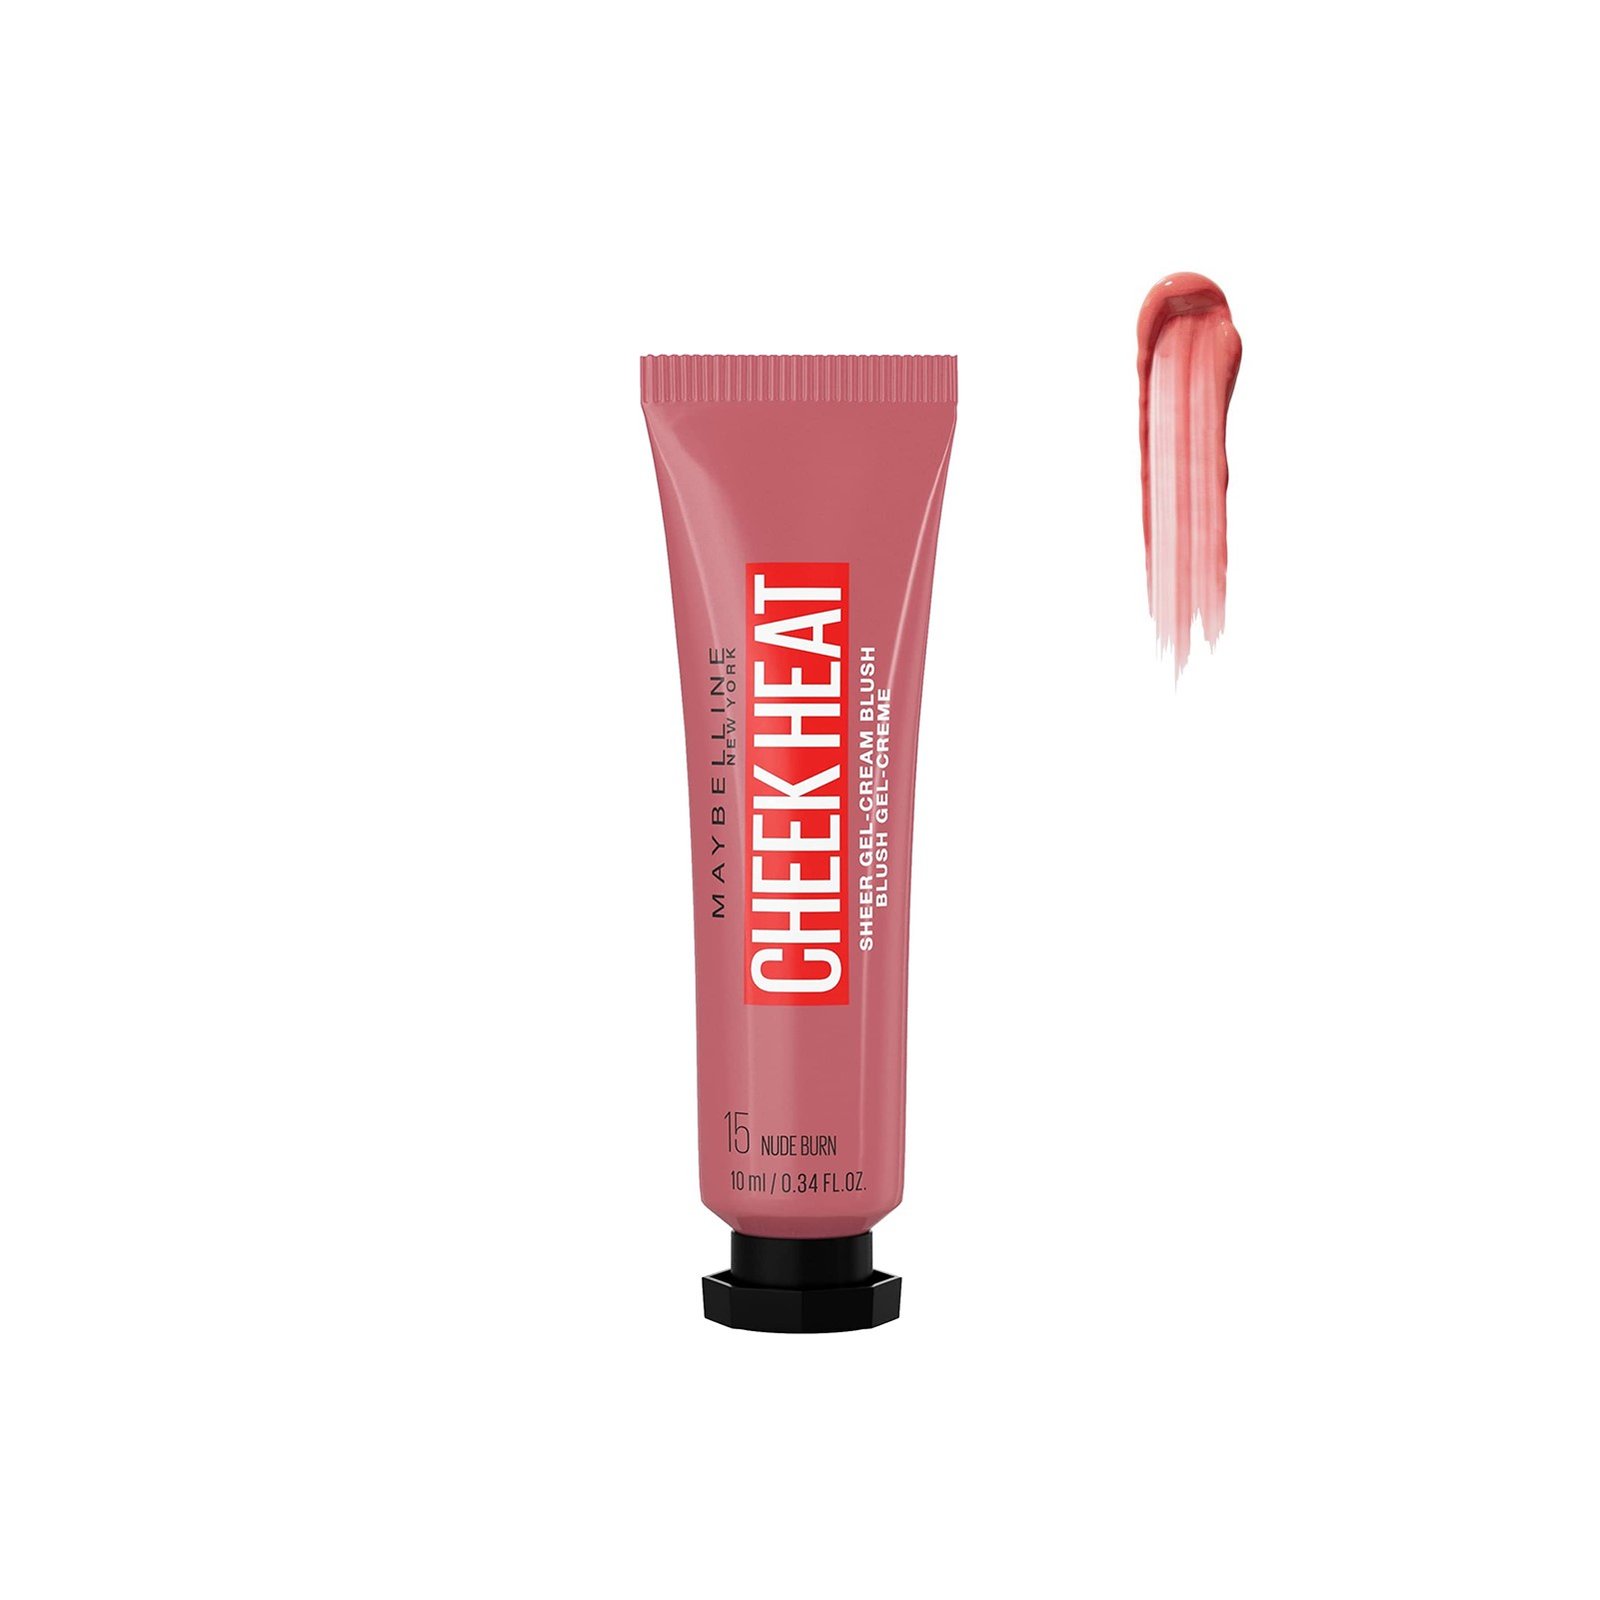 Maybelline Cheek Heat Sheer Gel-Cream Blush 15 Nude Burn 10ml (0.34 fl oz)